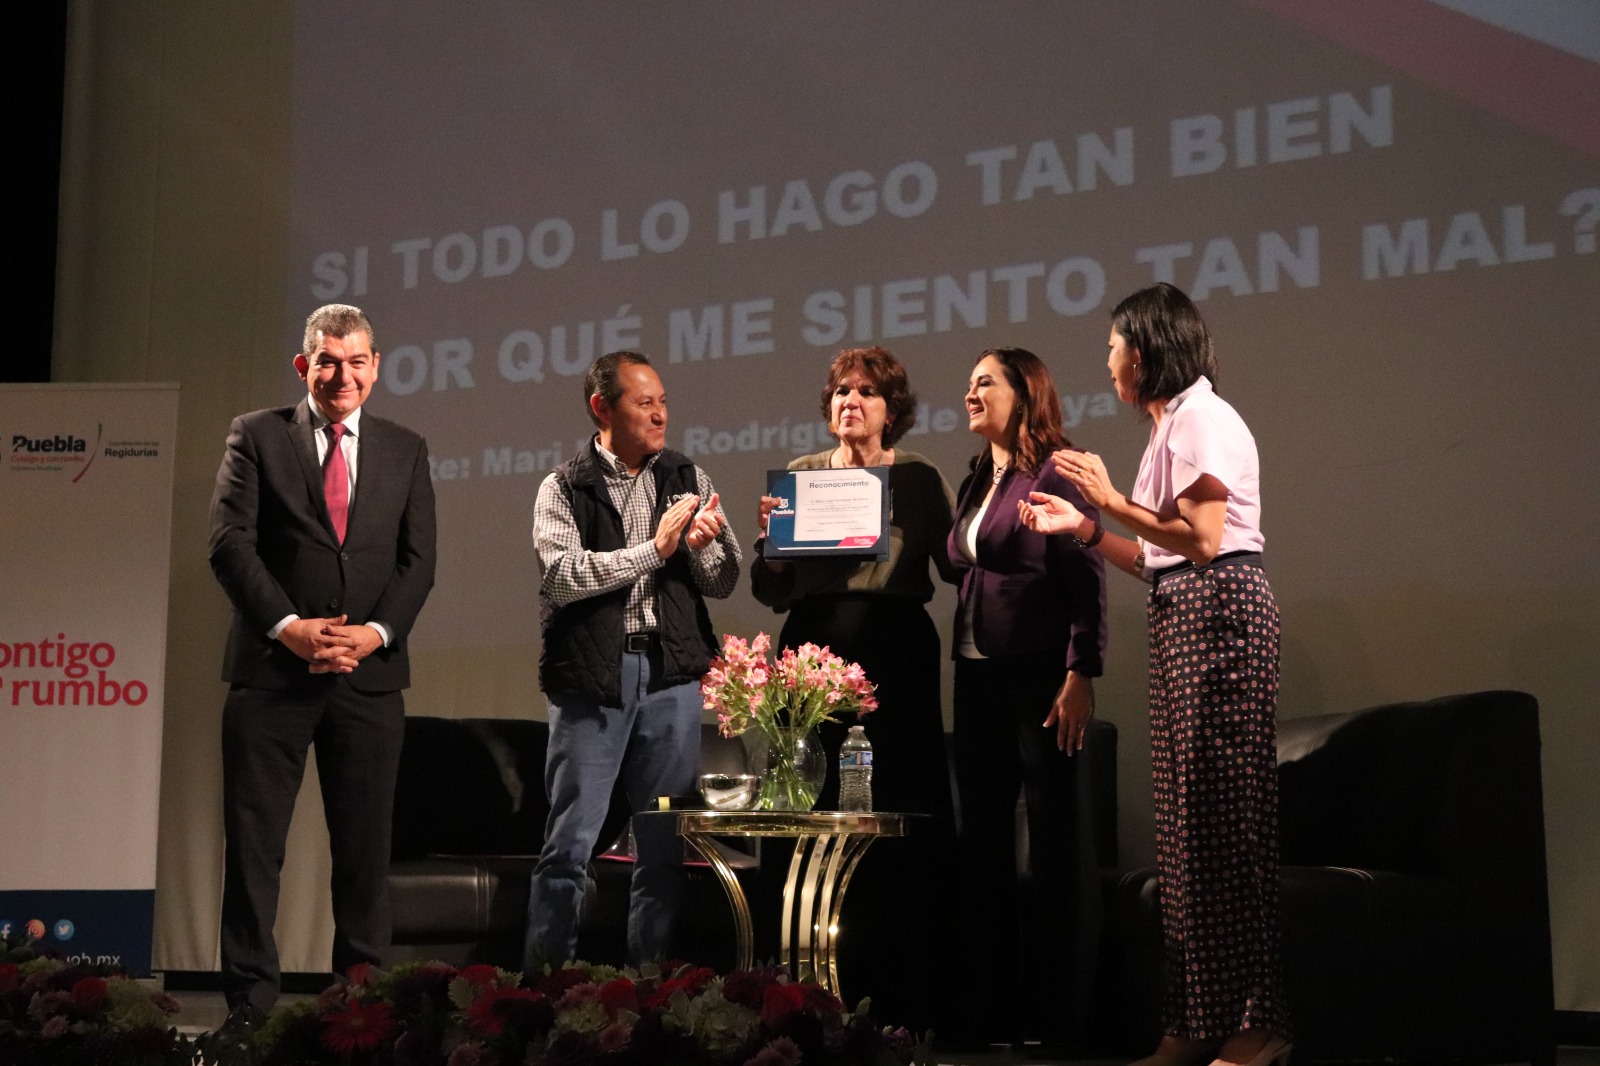 Reconocimiento 2 Conferencia - Si todo lo hago tan bien, porque me siento tan mal - Teatro de la Ciudad - Puebla marzo 2023